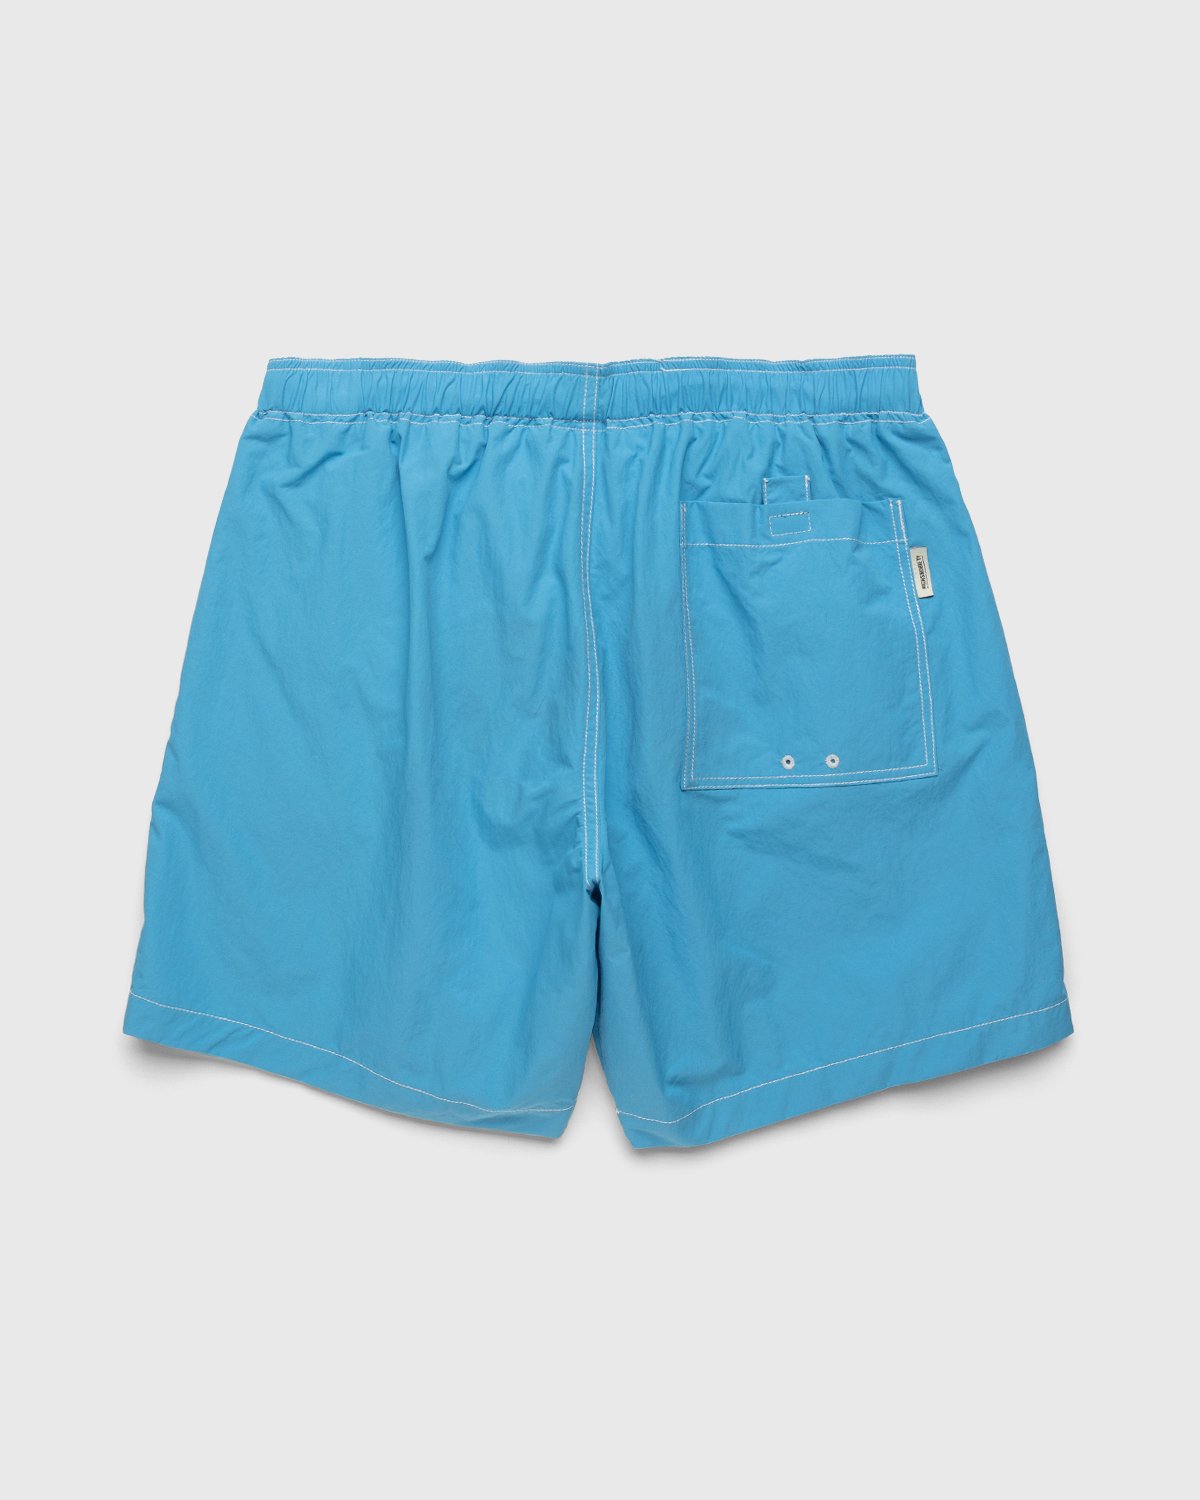 Highsnobiety - Contrast Brushed Nylon Water Shorts Blue - Clothing - Blue - Image 2